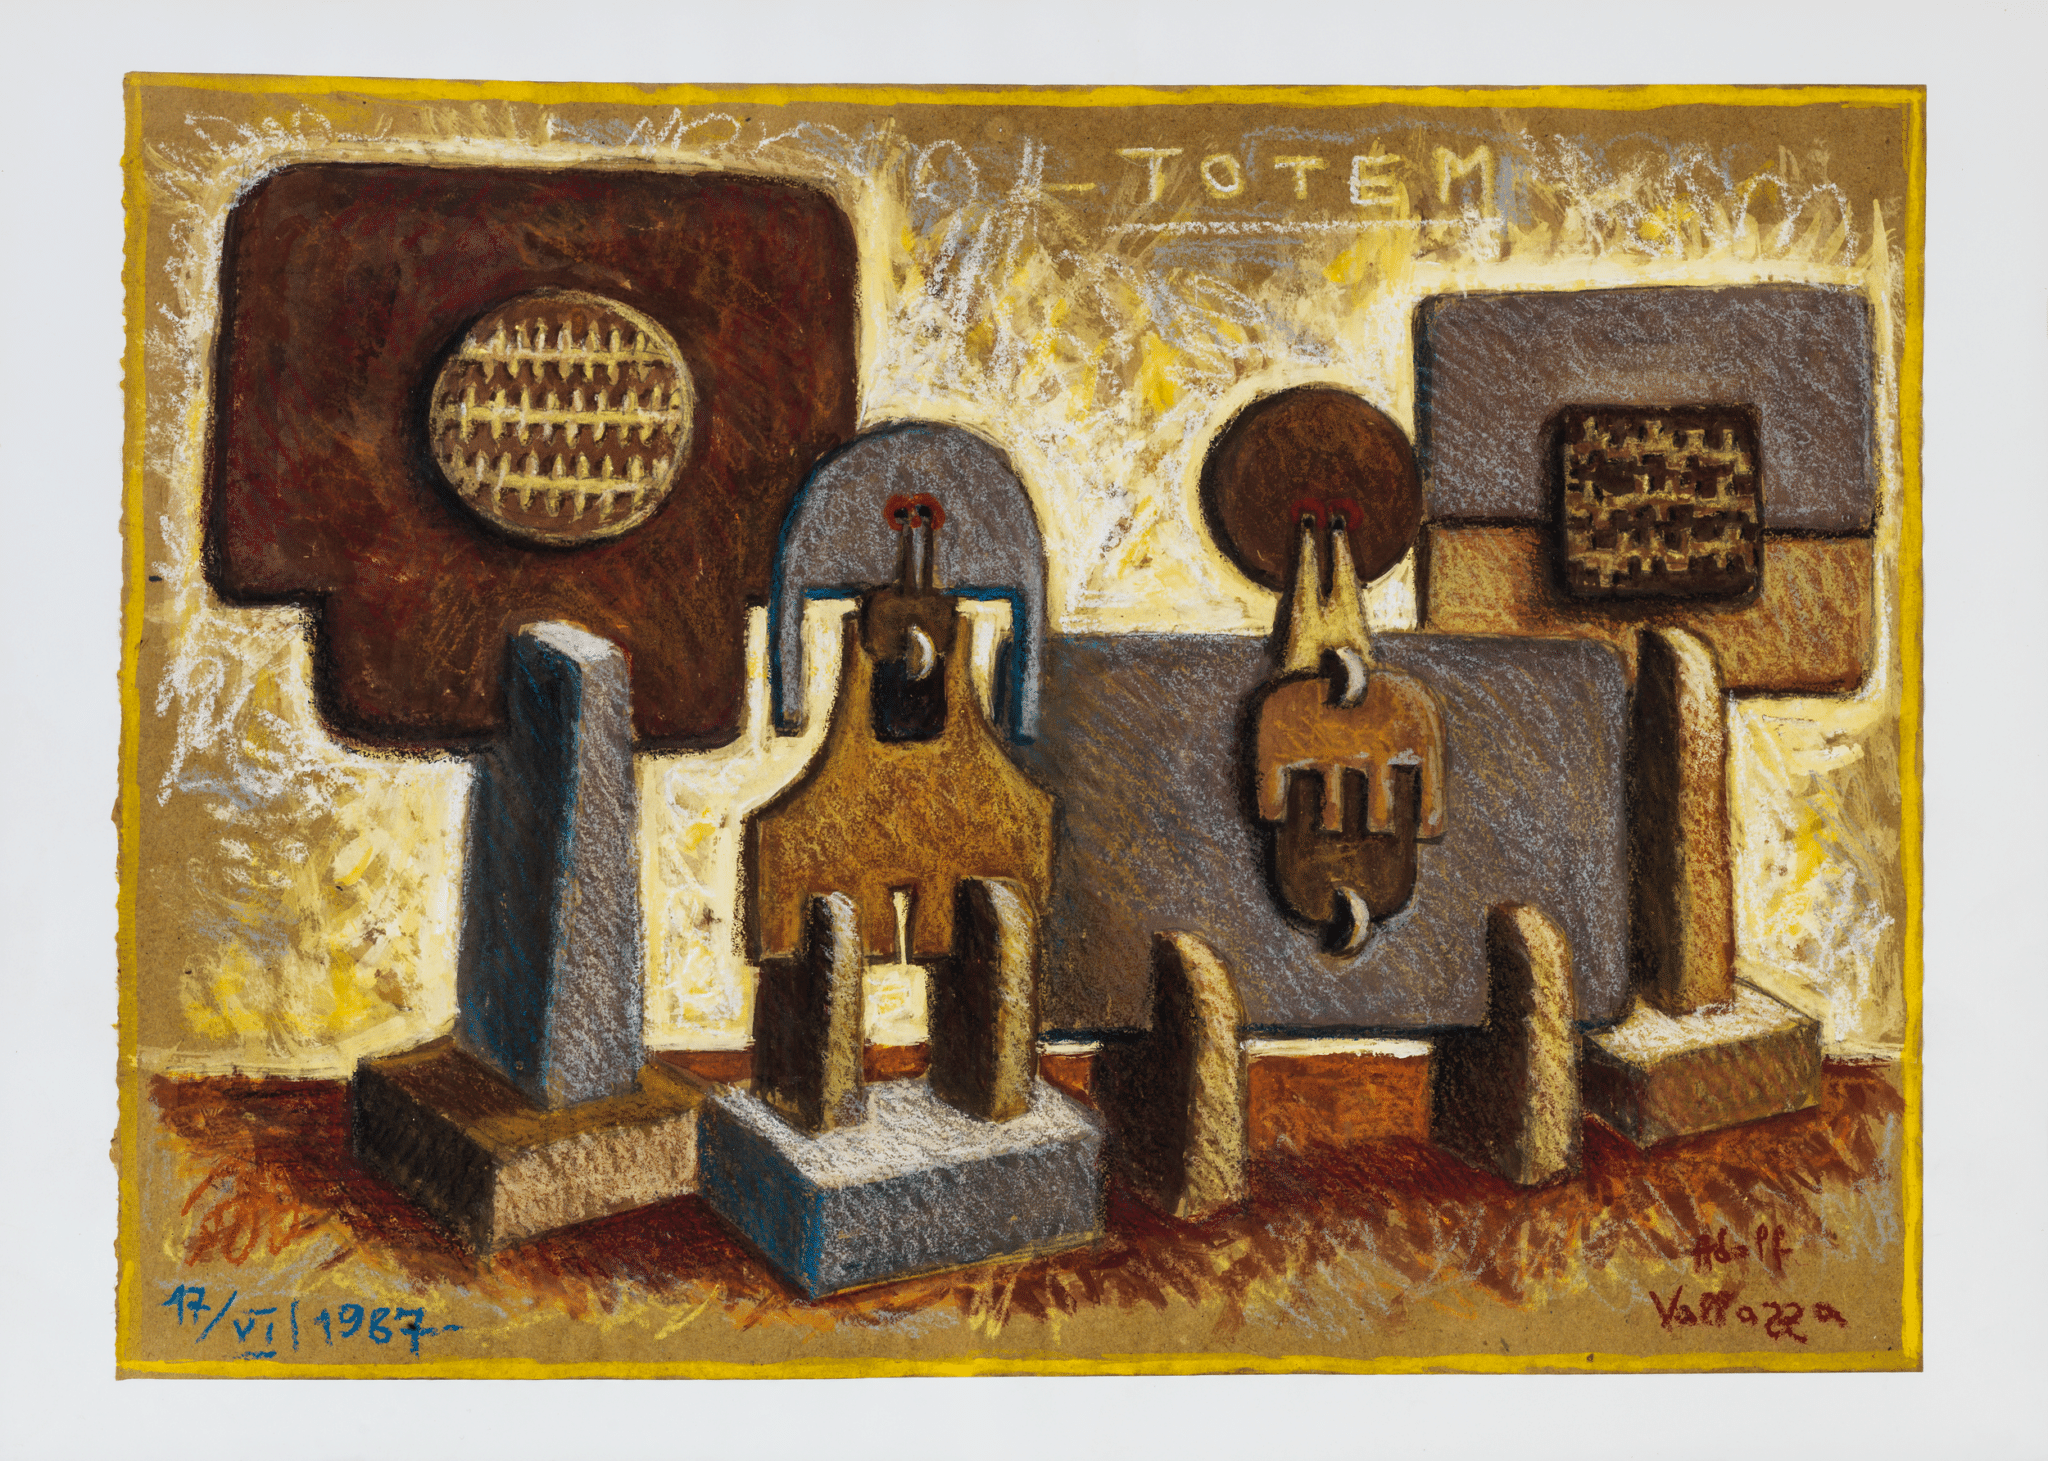 Adolf Vallazza, Totem, 1987, technique mixte sur papier, 44.2 x 61 cm Collection Museion, photo : Gardaphoto s.r.l., Salò